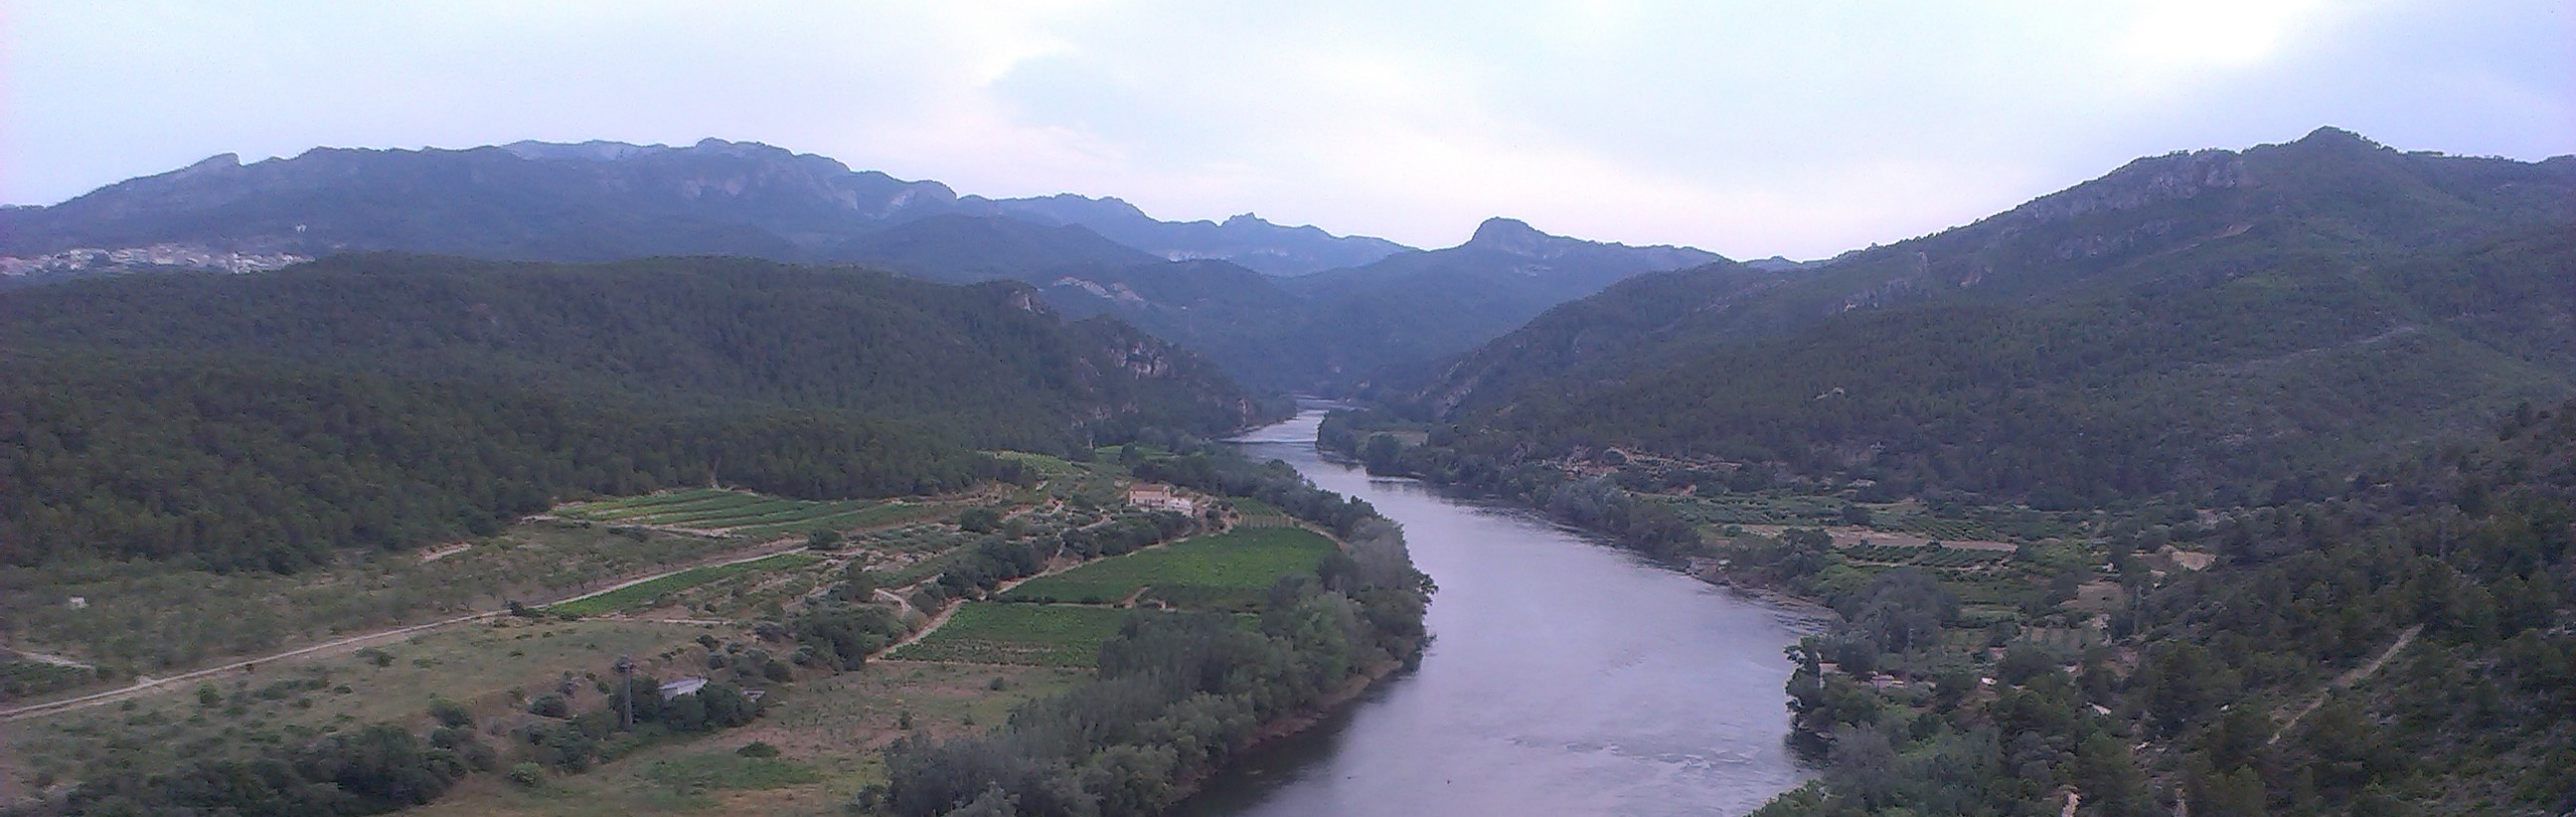 AVISO HIDROLÓGICO : Los ríos de las cuencas altas de los Nogueras y Segre se encuentran con caudales en ascenso